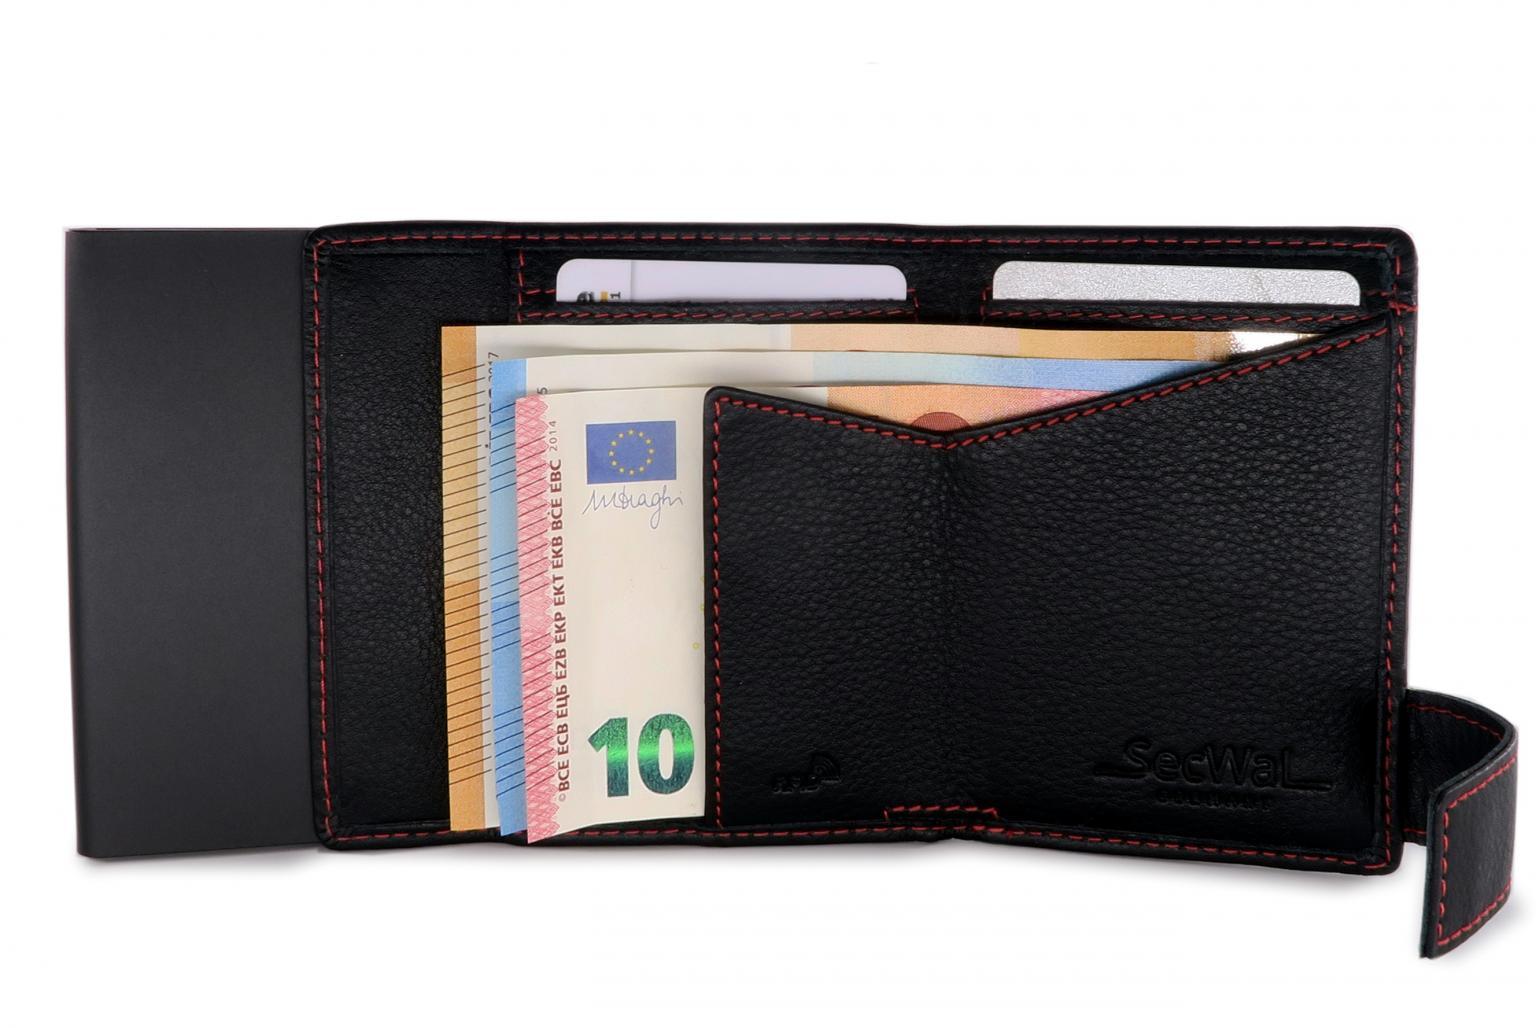 Secwal Geldtasche RFID Kartenschutz schwarz mit roter Naht